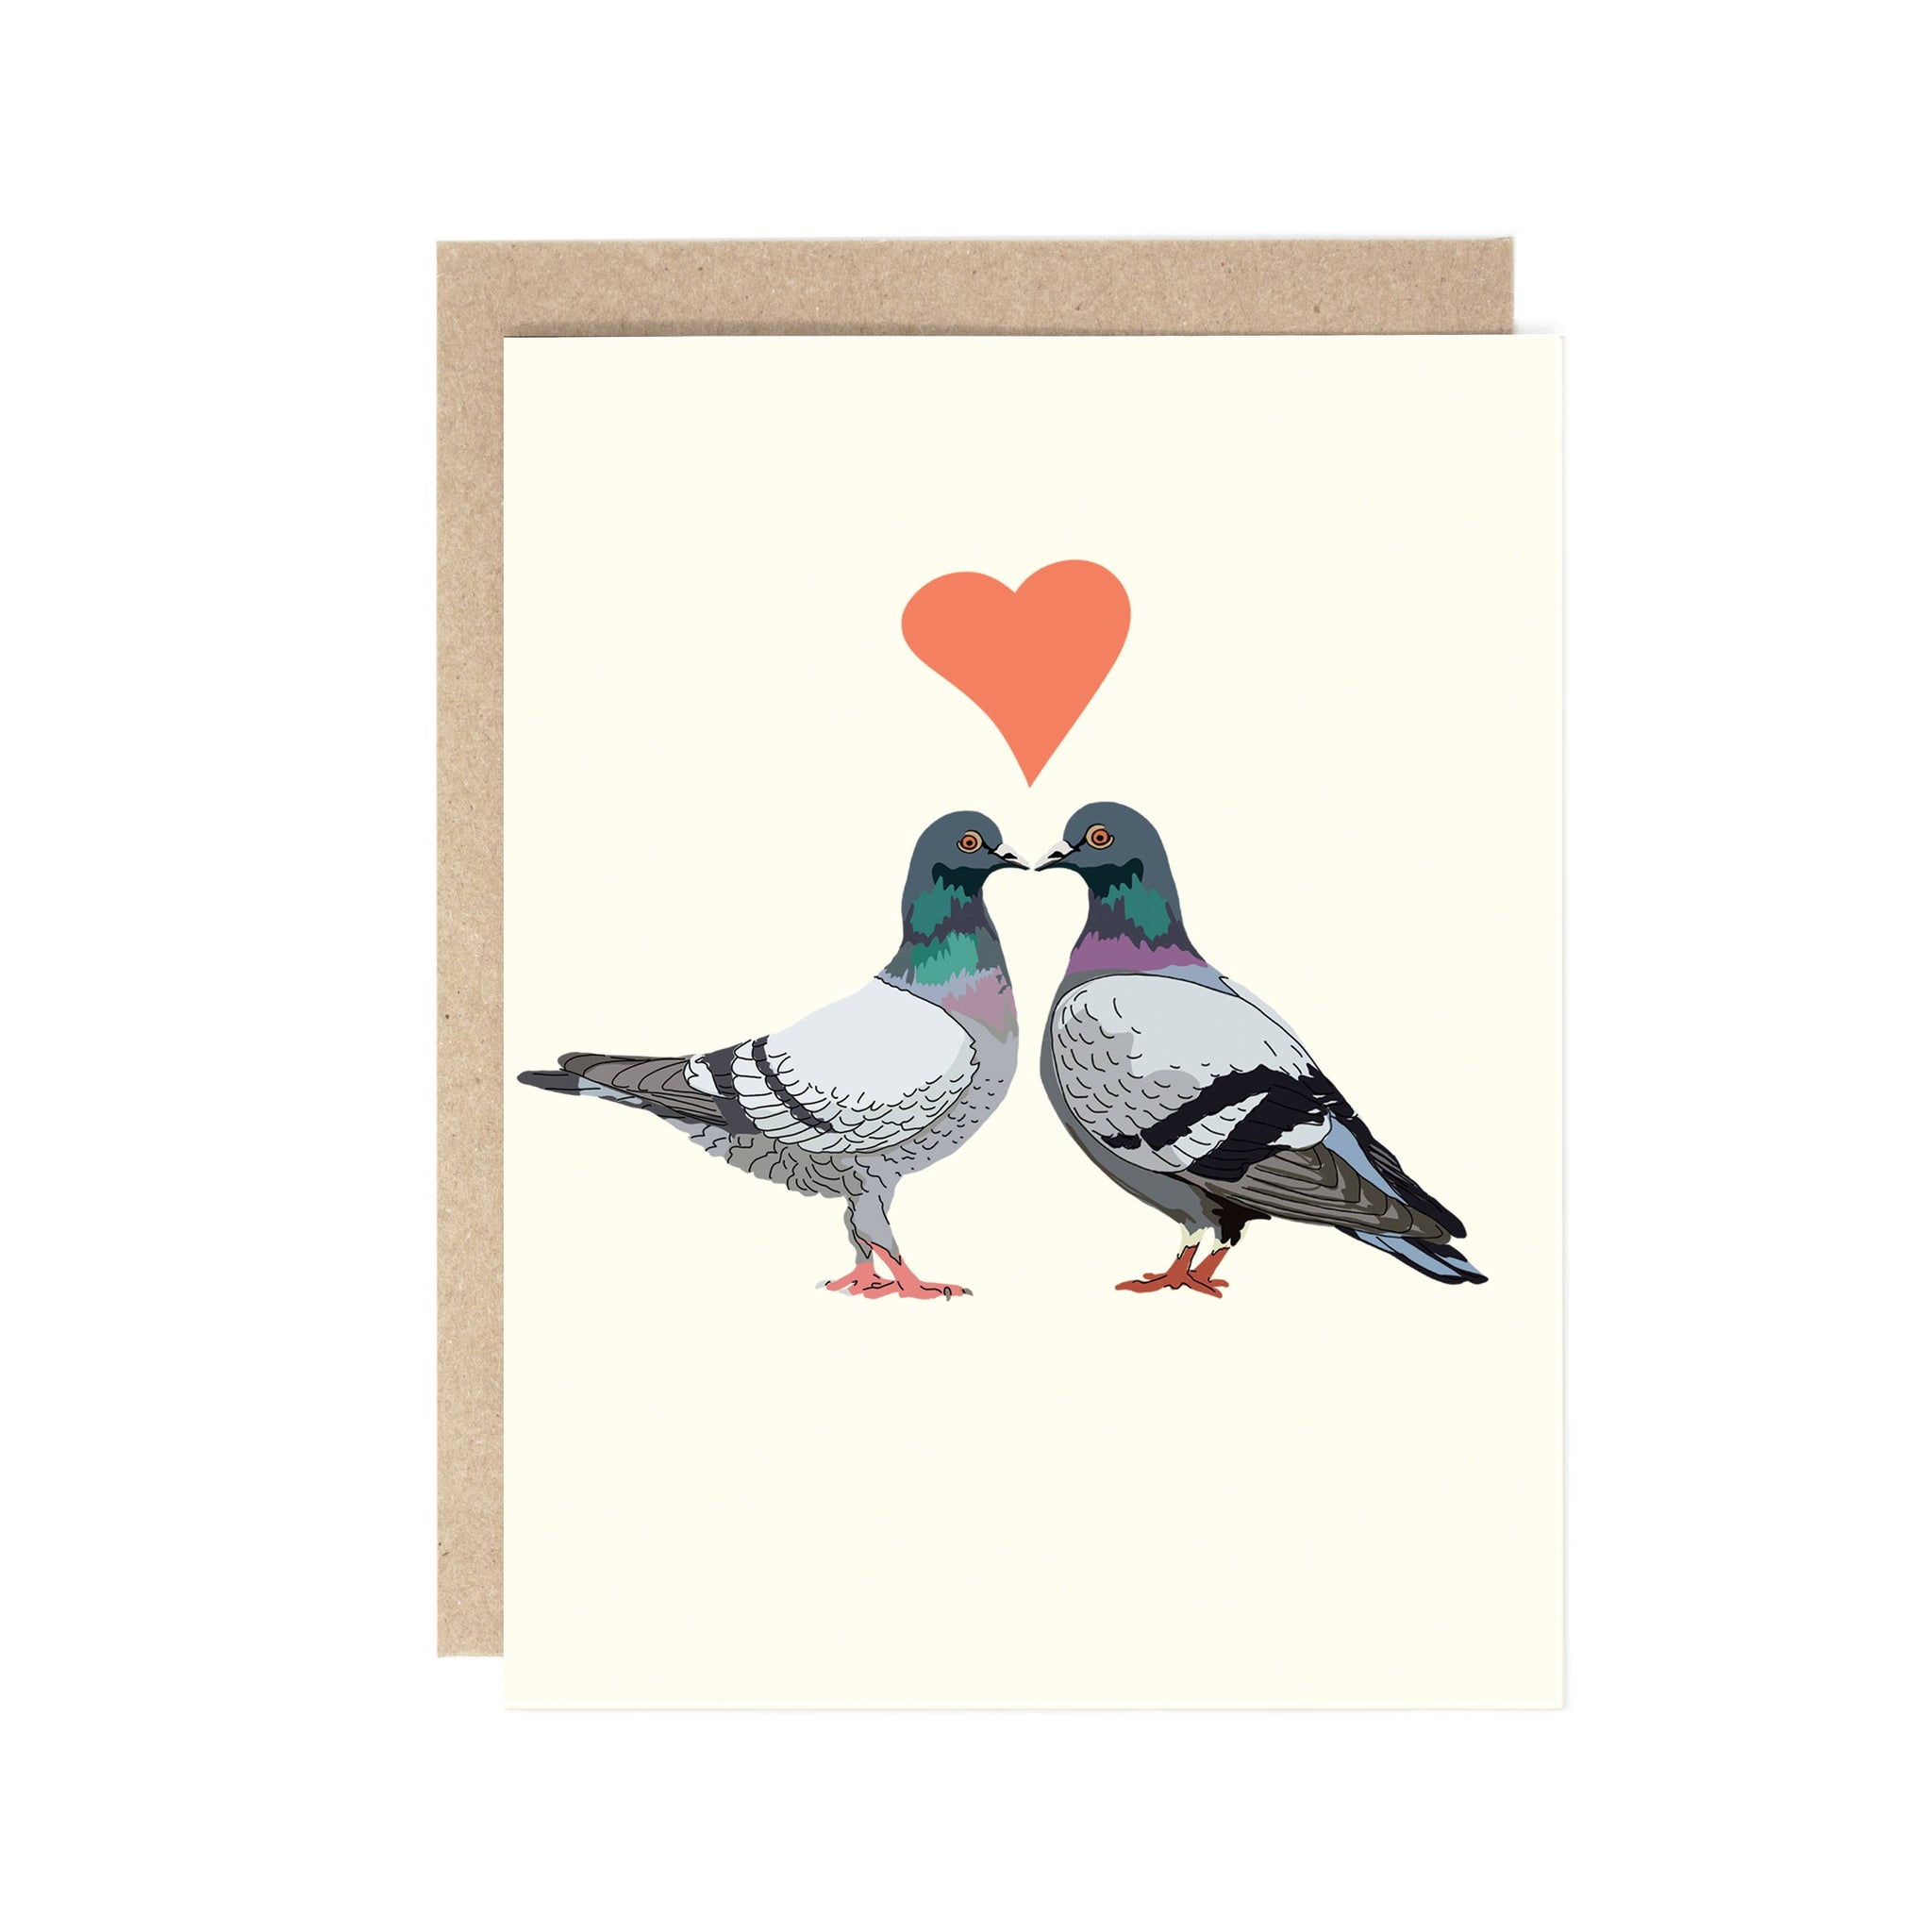 Drawn Goods - Love Birds Pigeon Valentine's Day Card